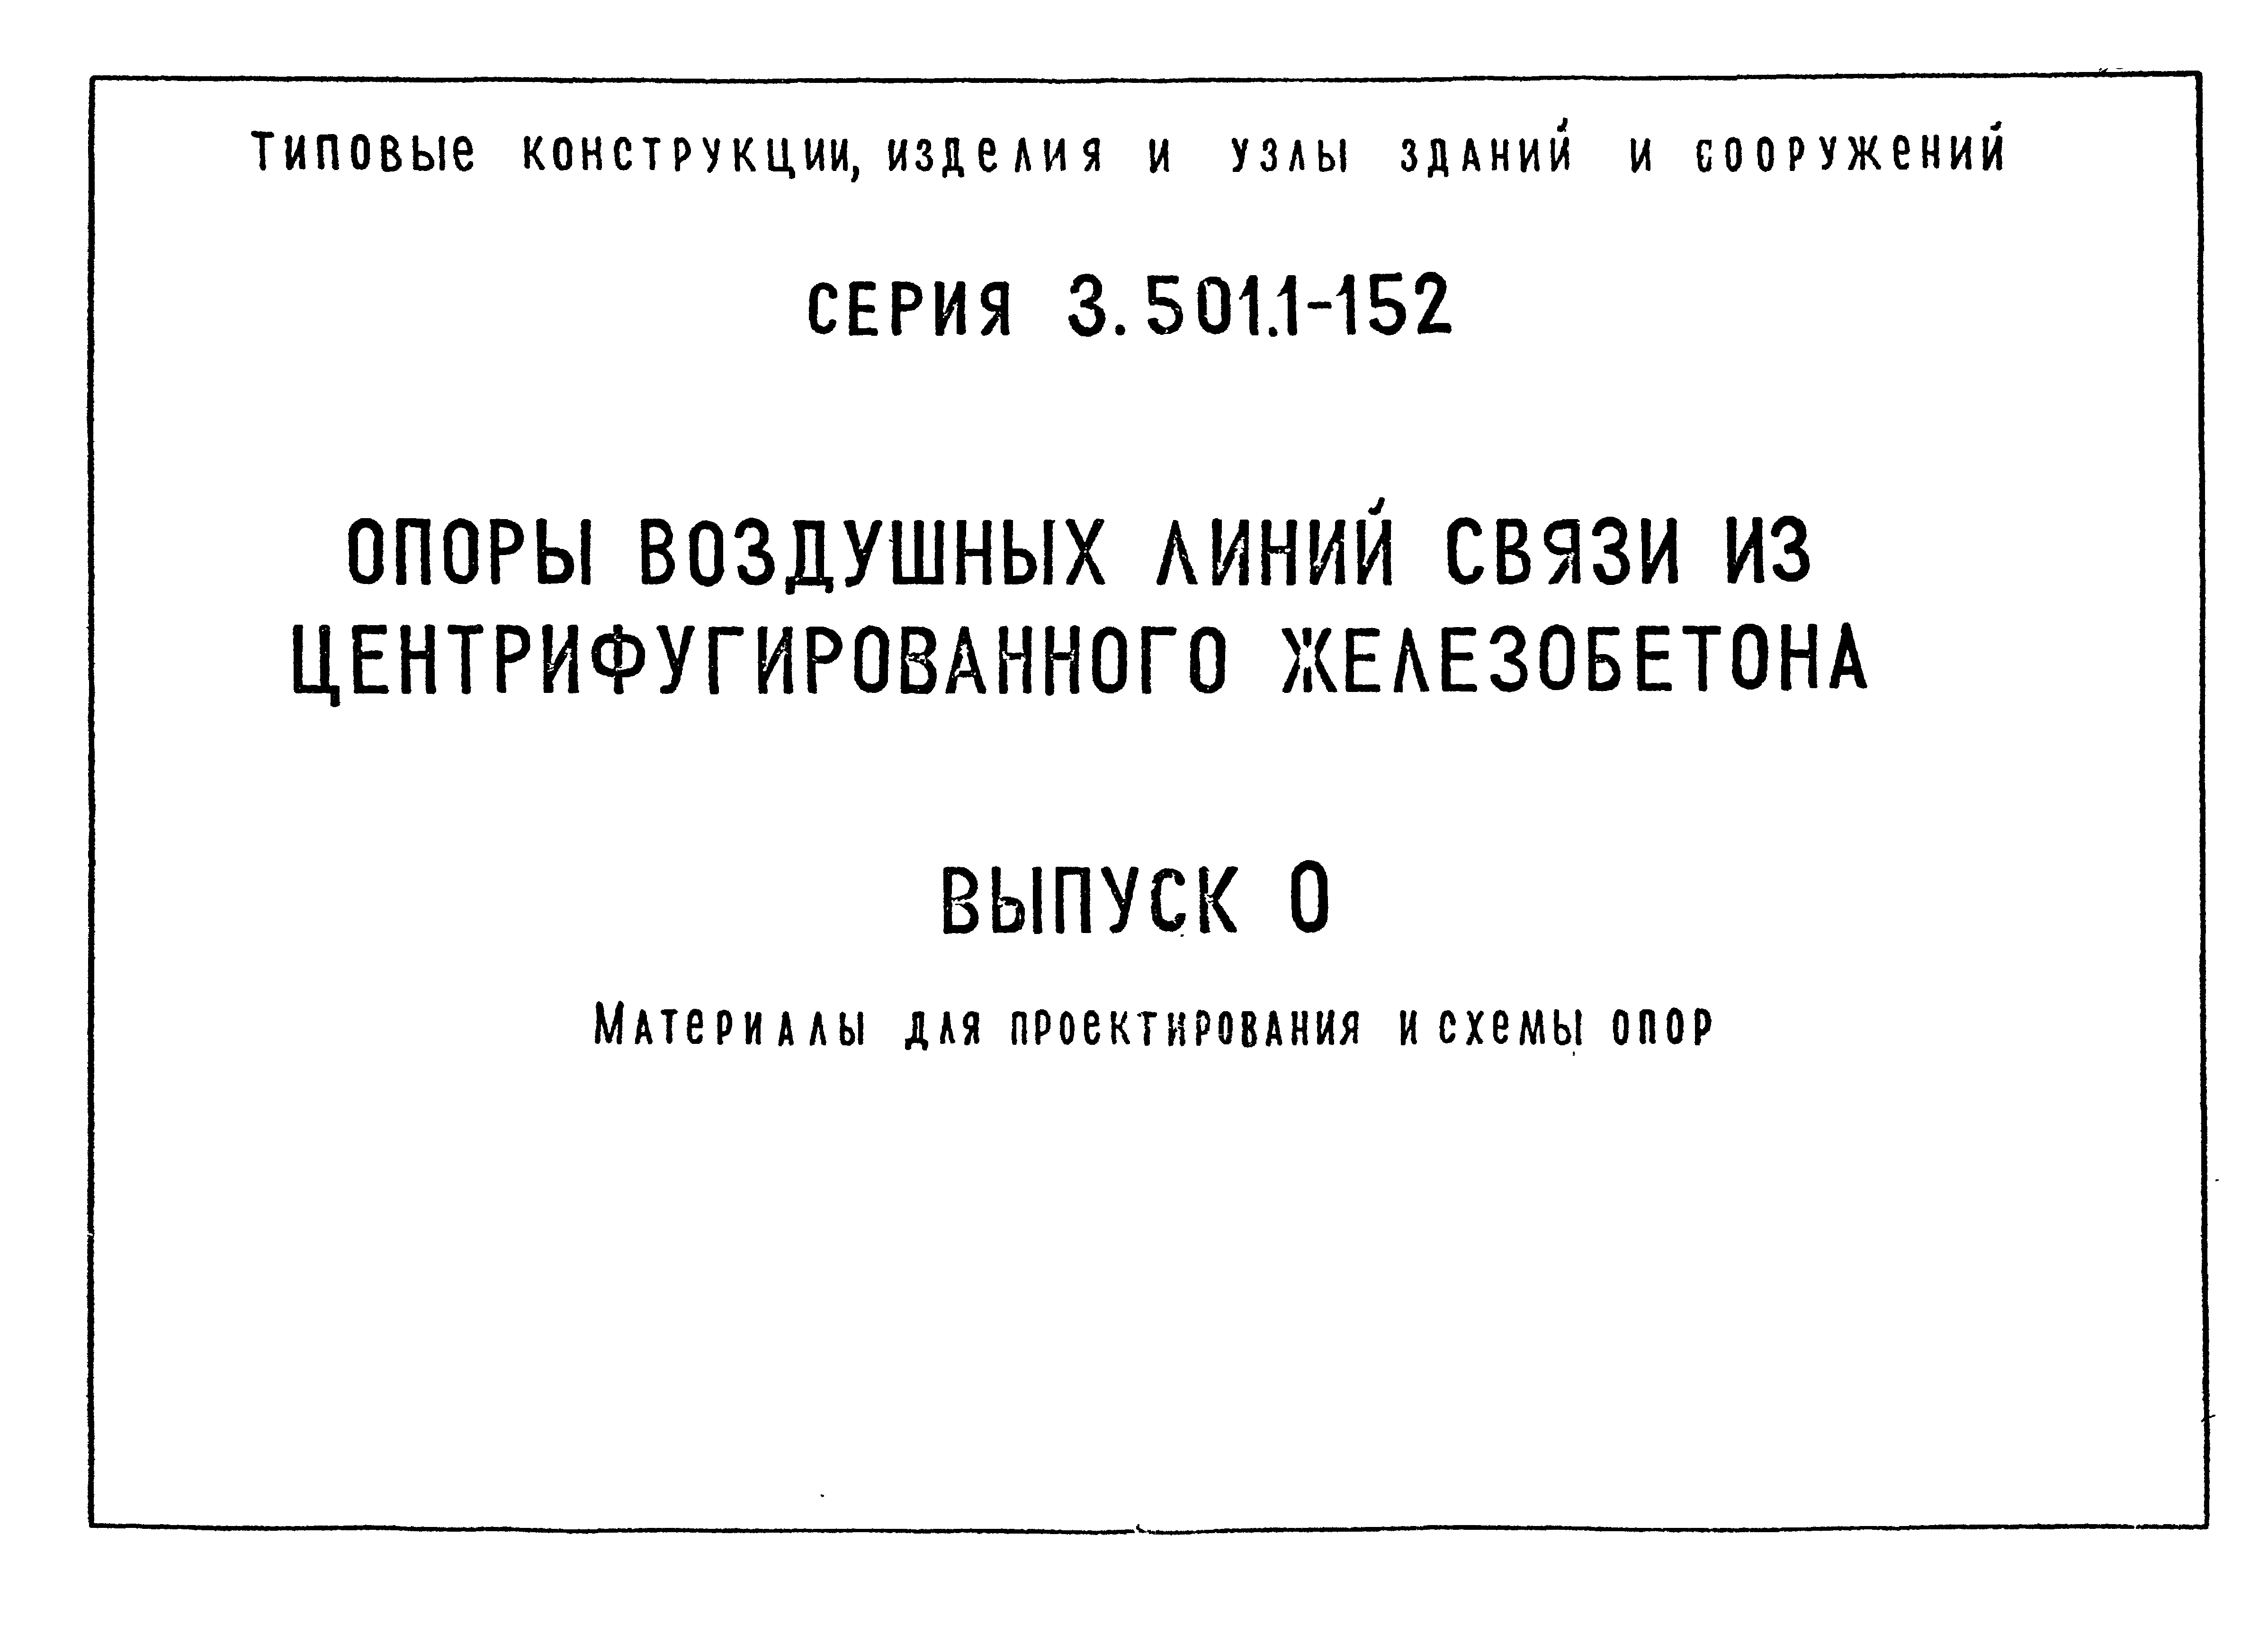 Серия 3.501.1-152